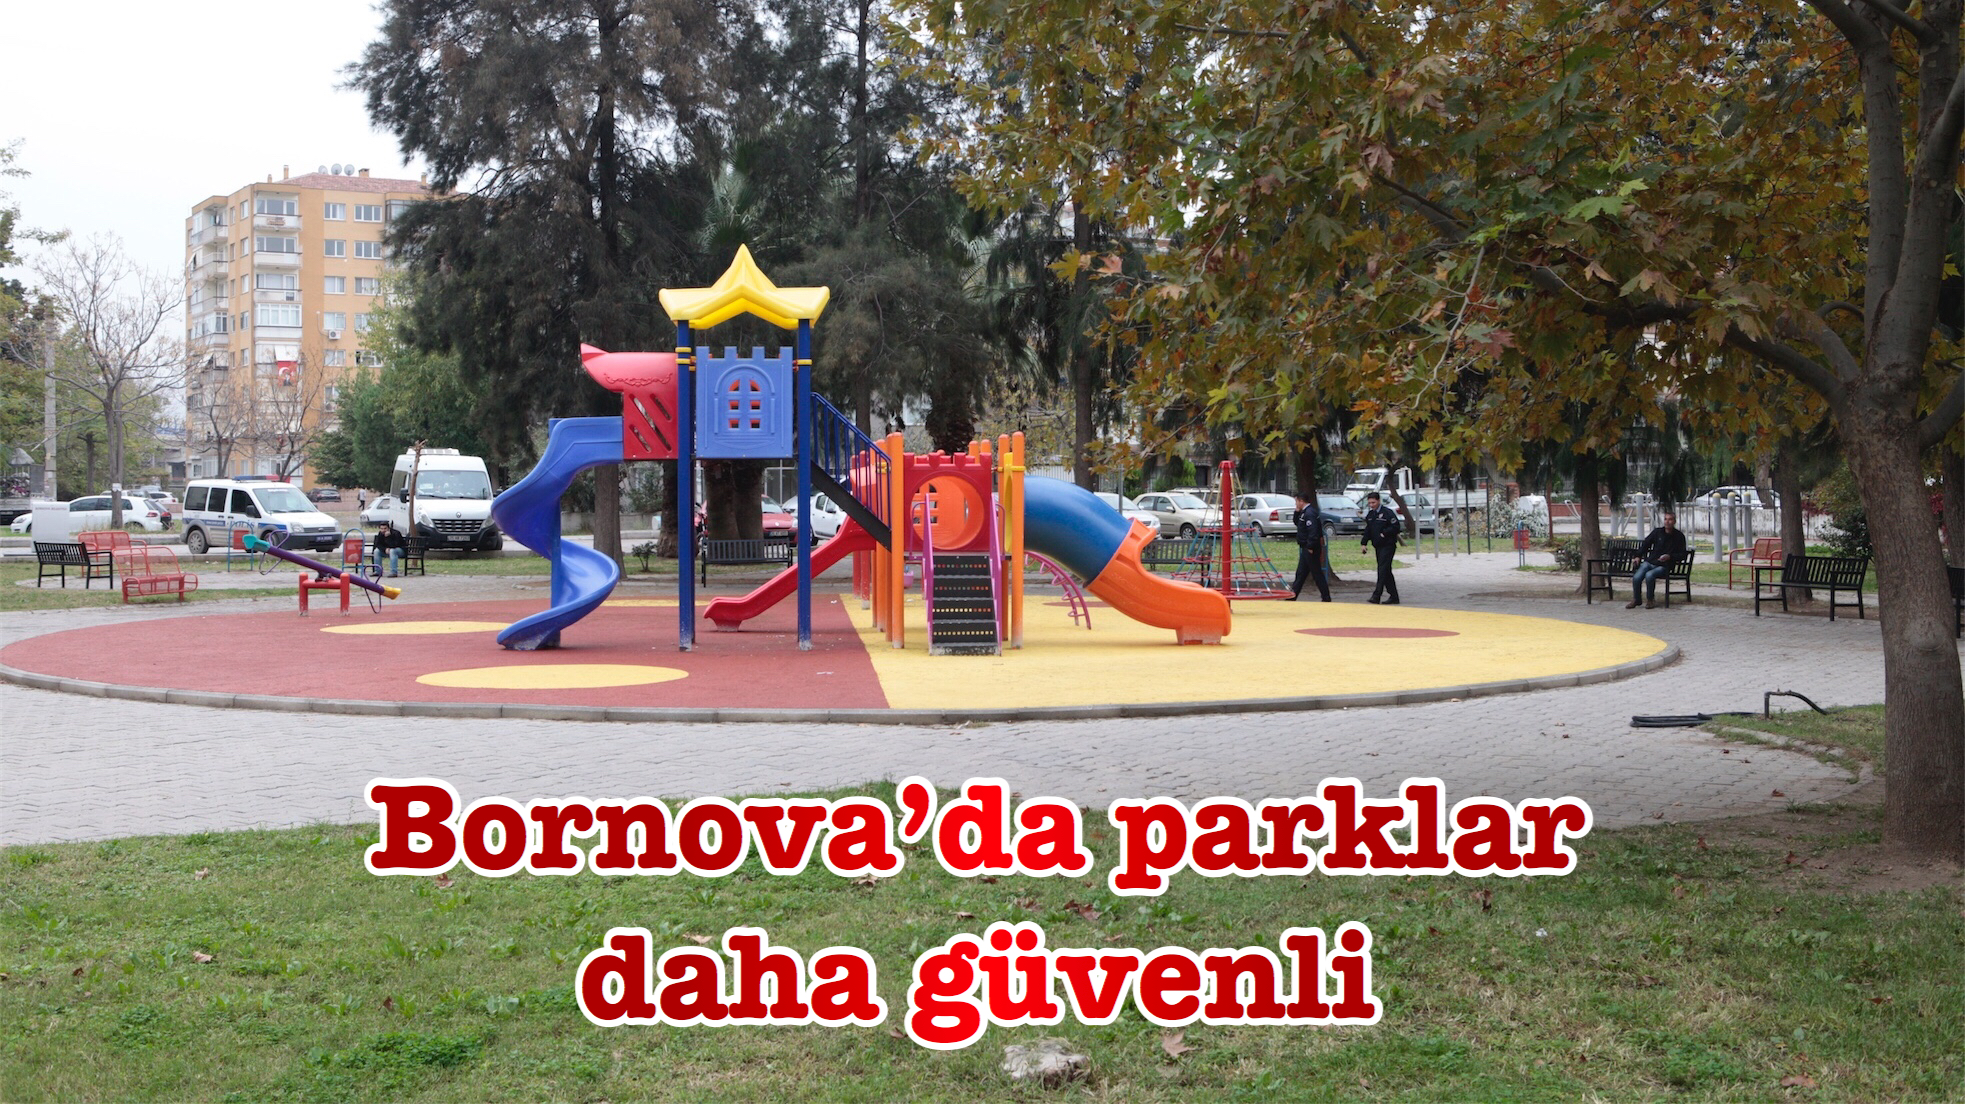 Bornova’da parklar daha güvenli